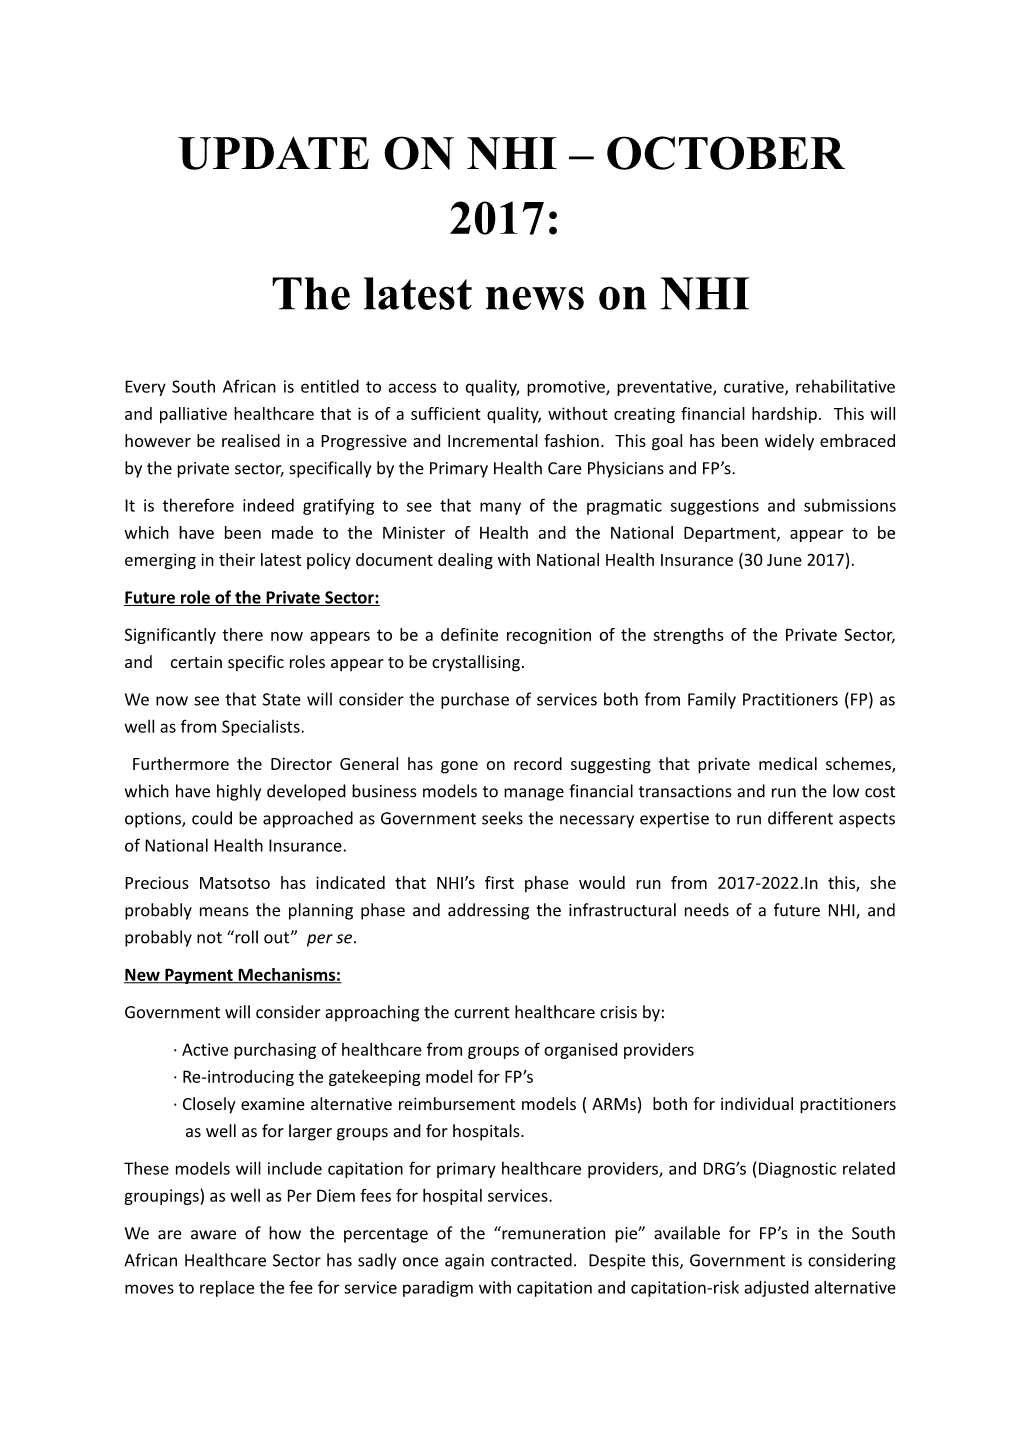 The Latest News on NHI